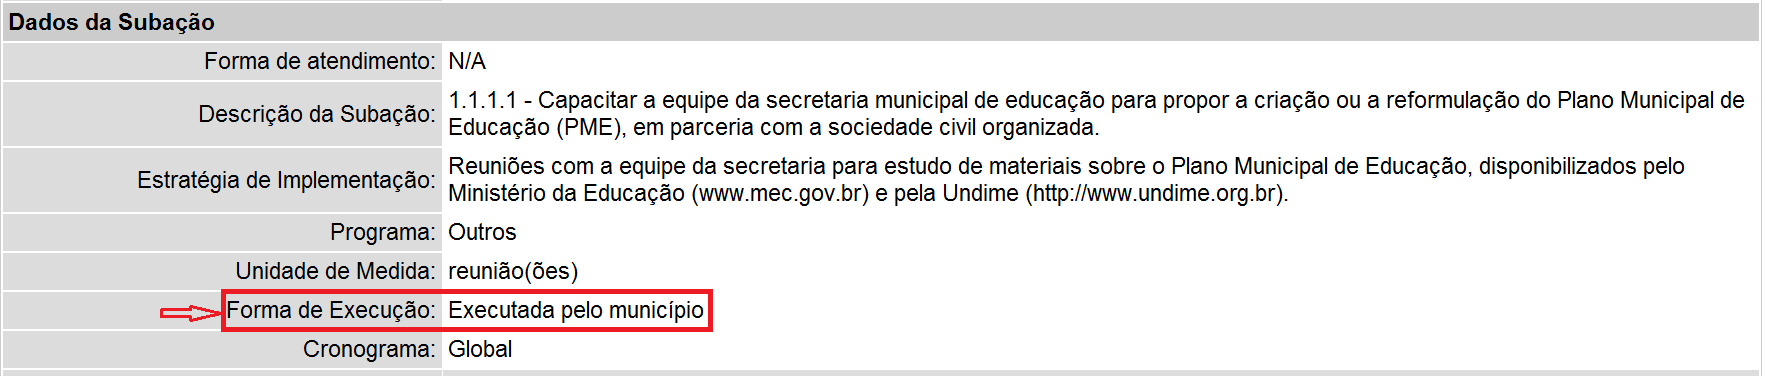 Executada pelo município: quando a secretaria municipal de educação é a responsável pela implementação da subação. Exemplo: Figura 38